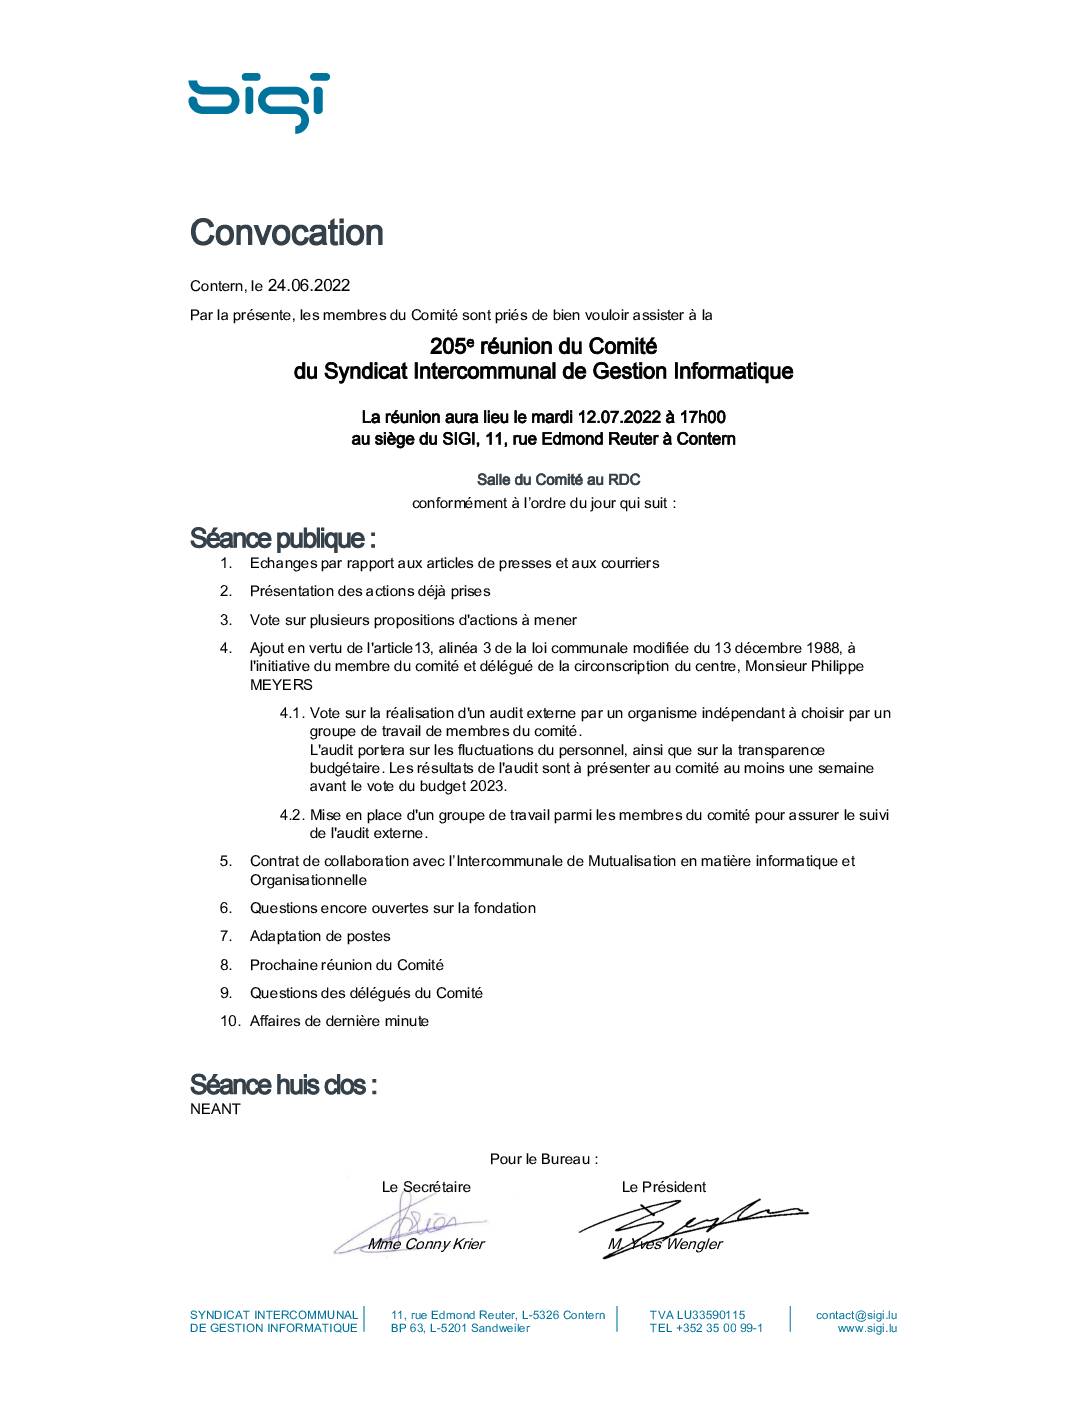 SIGI - Réunion du Comité 12 07 2022